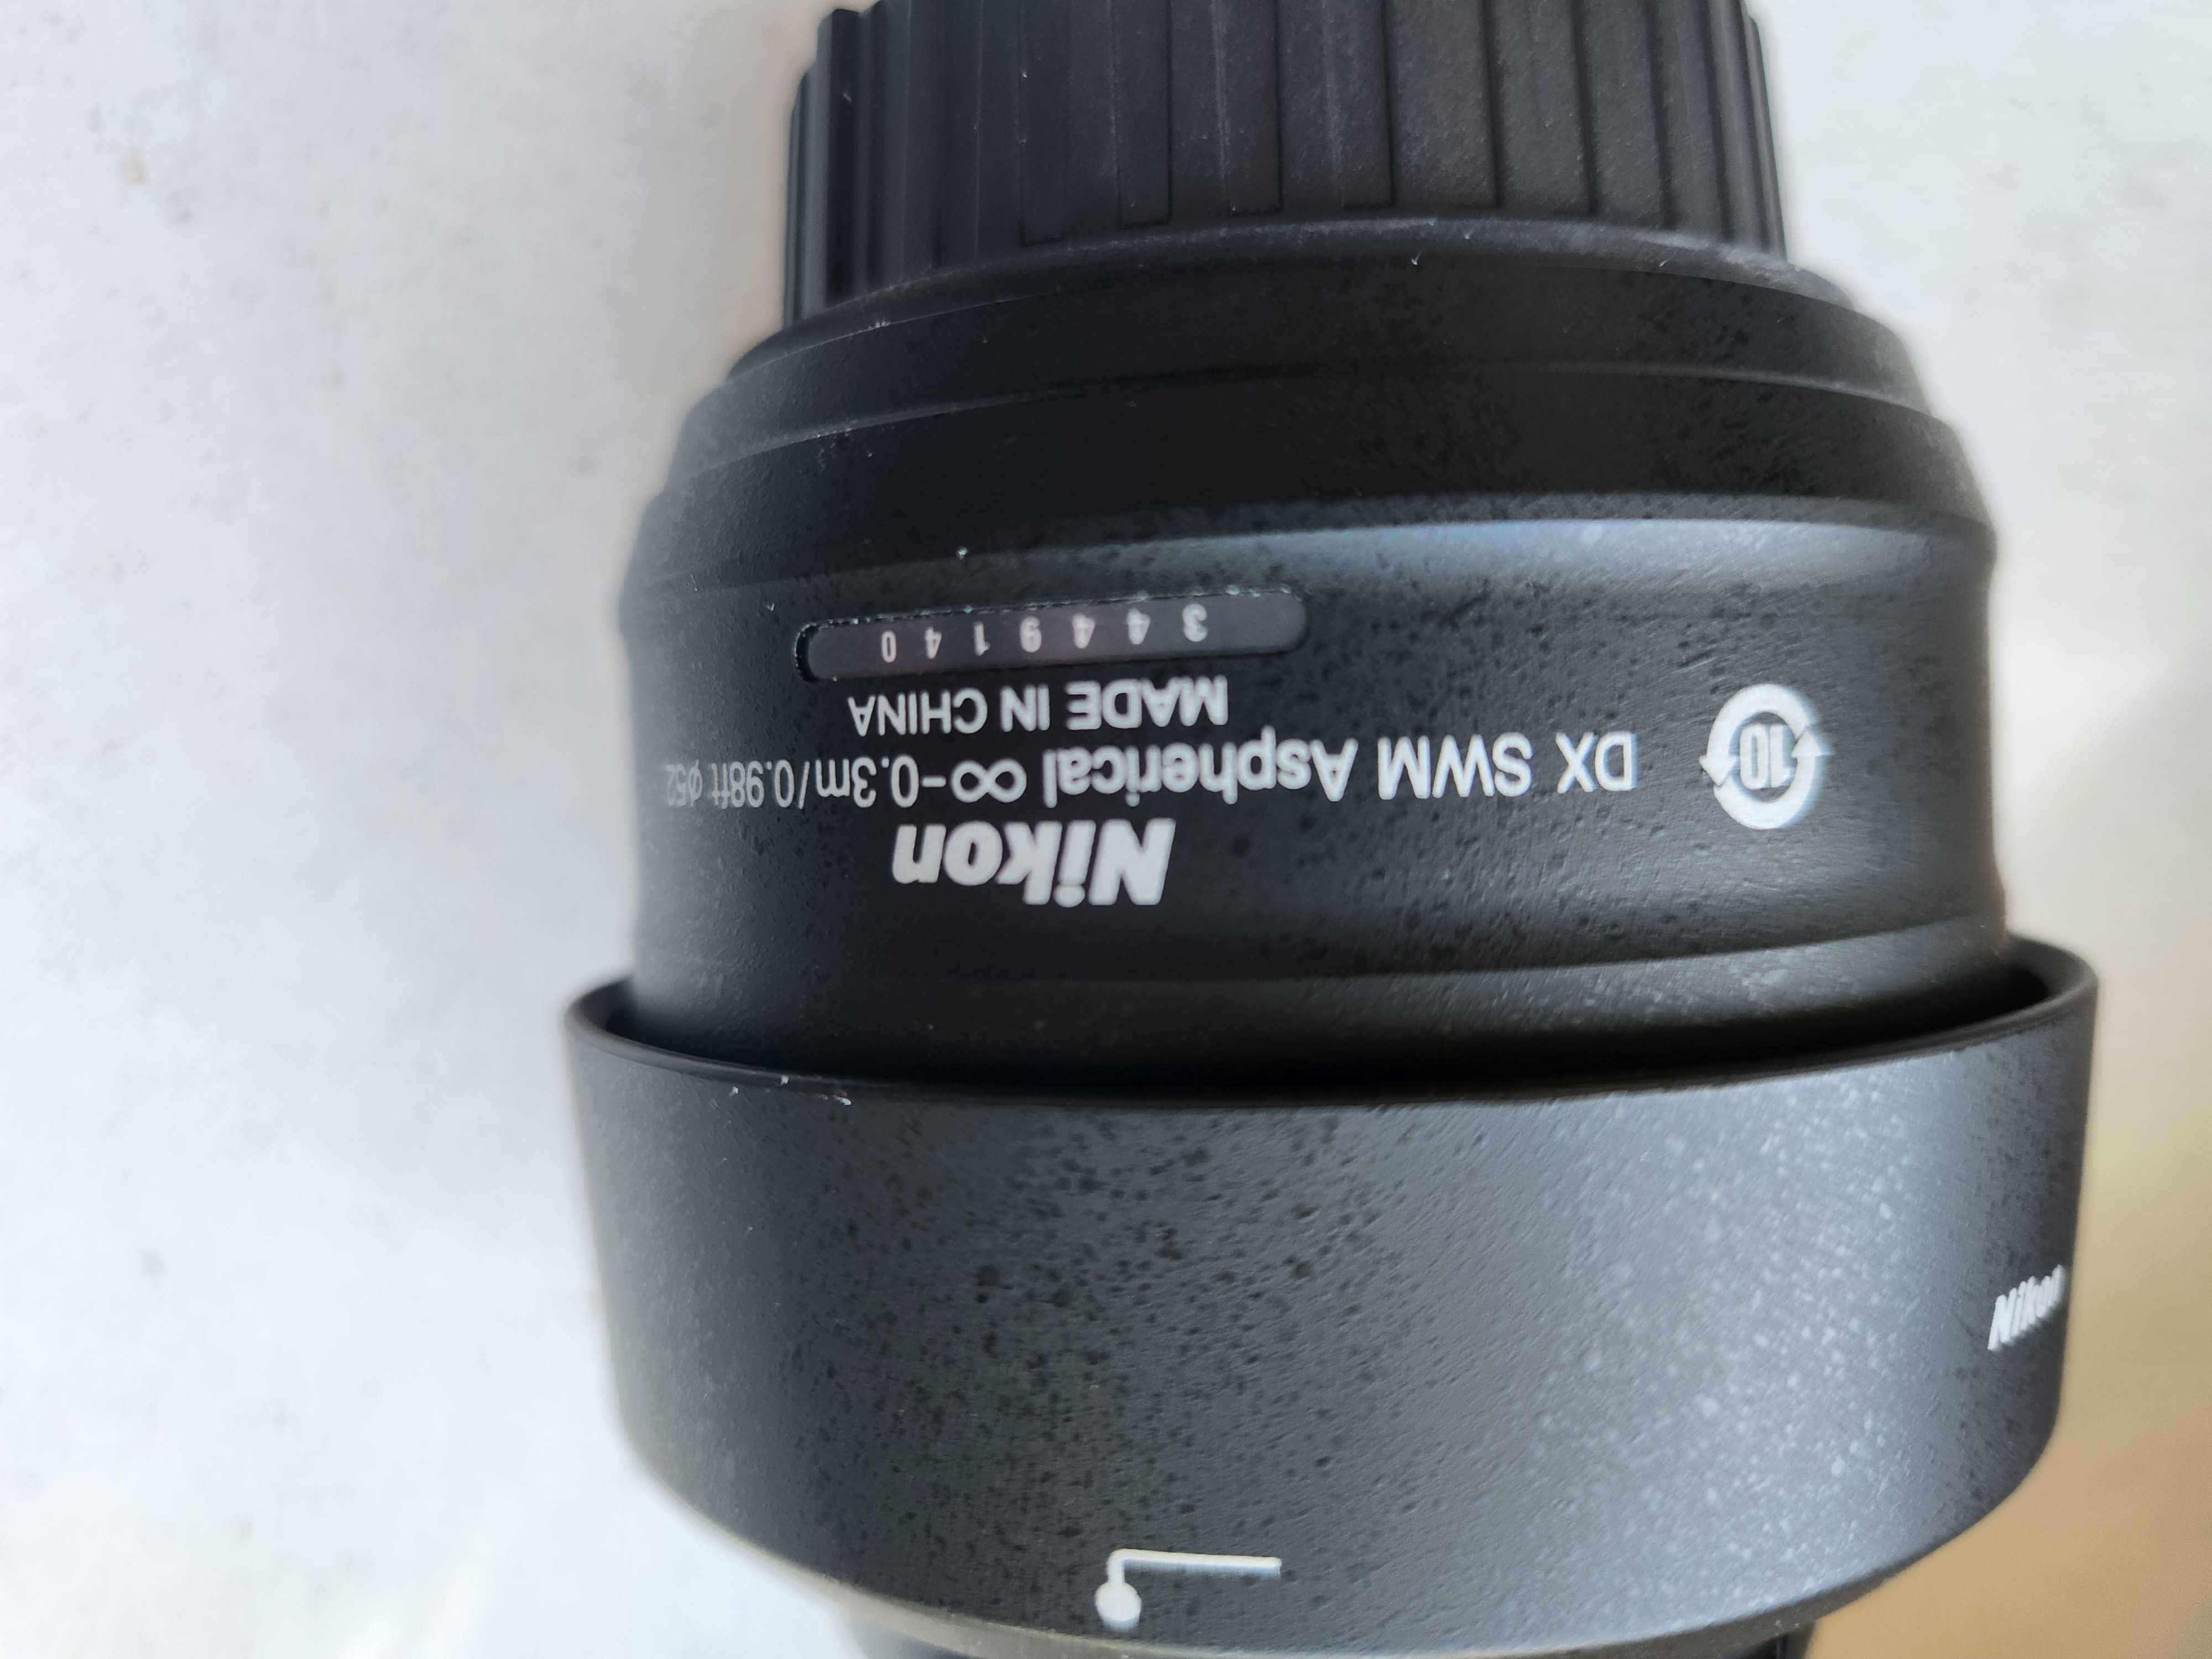 Nikkor 35 mm 1:1,8 G   AFS   DX    obiektyw do Nikona stało ogniskowy